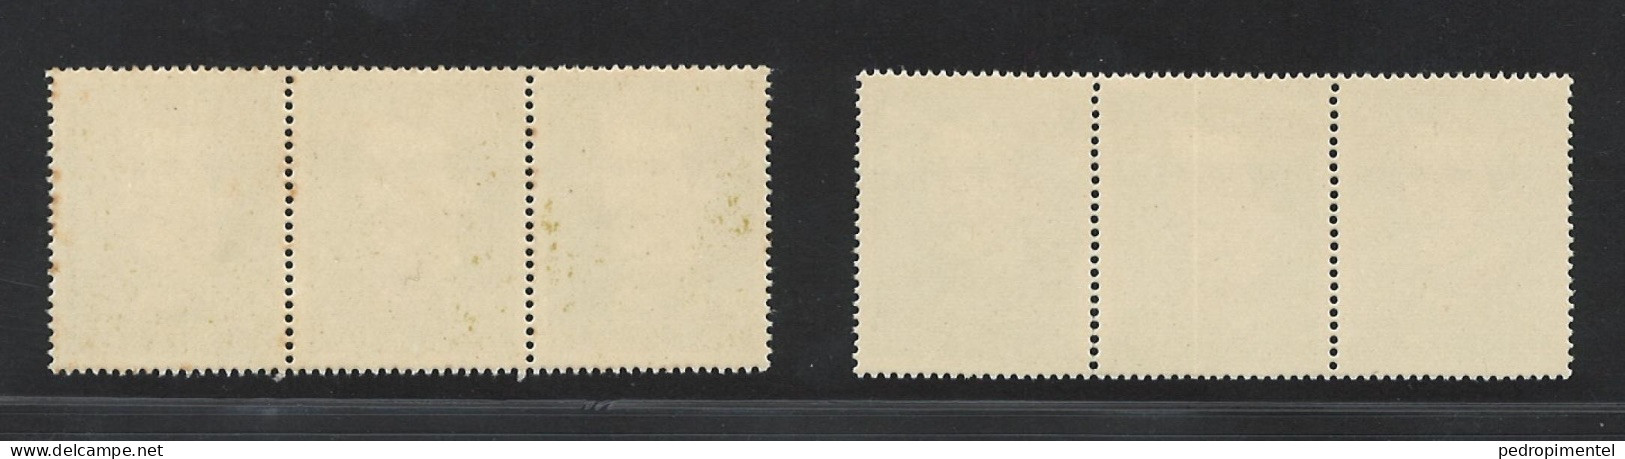 Portugal Stamps 1957 "Cesario Verde" Condition MNH #831-832 (strip Of 3) - Ongebruikt